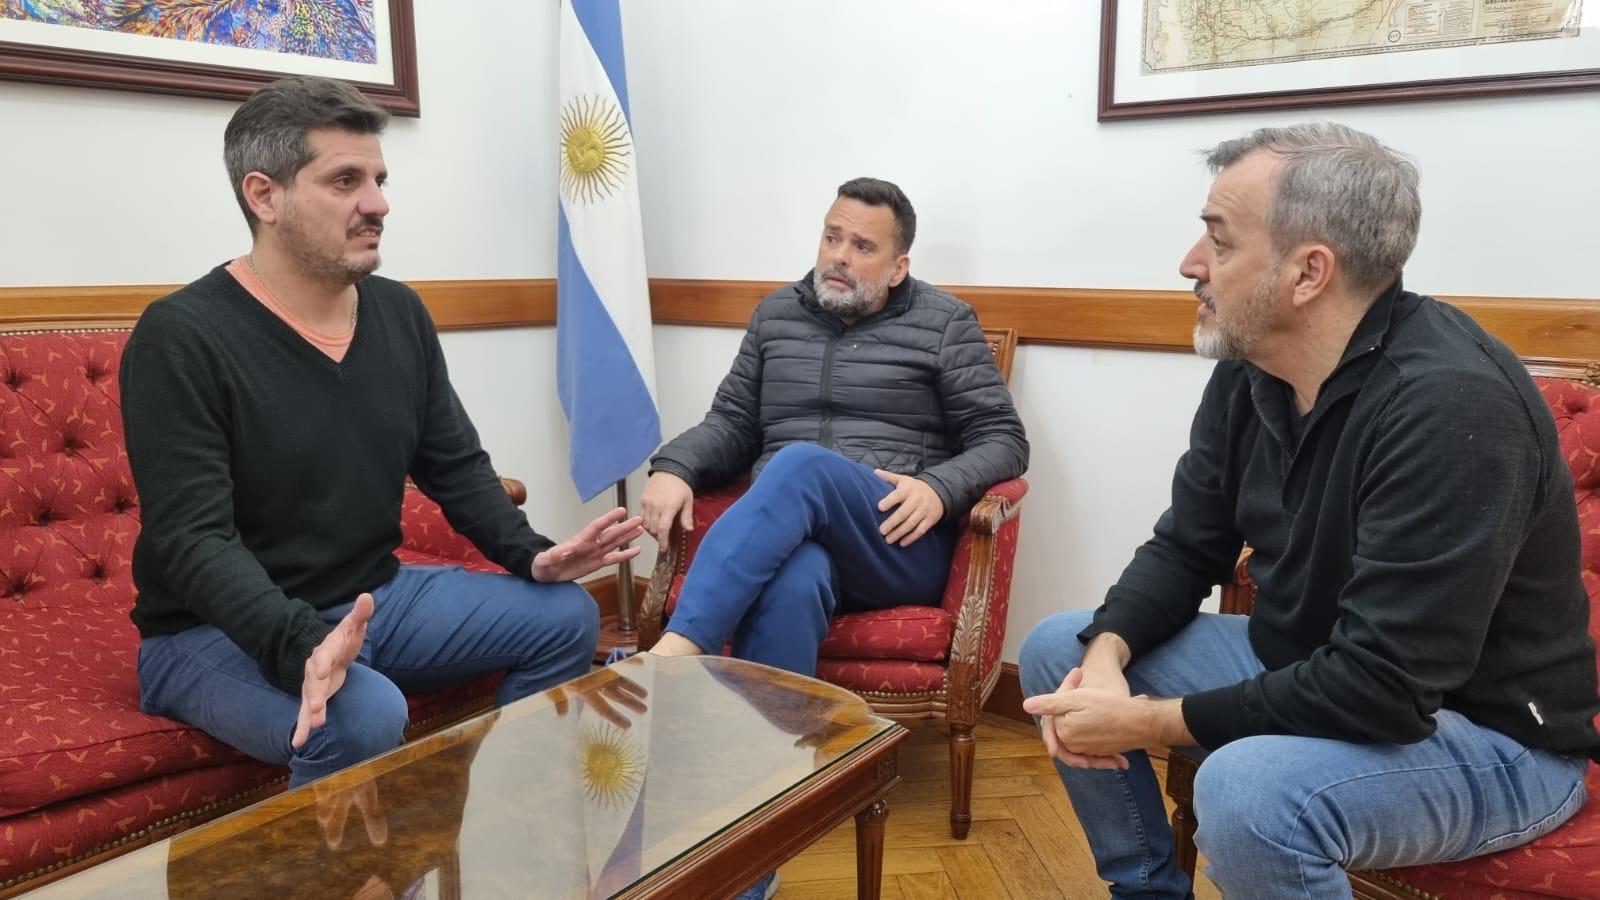 Mateo Canosa y Daniel Menéndez, del partido Somos, se reunieron con Rodolfo Aguiar en Buenos Aires.